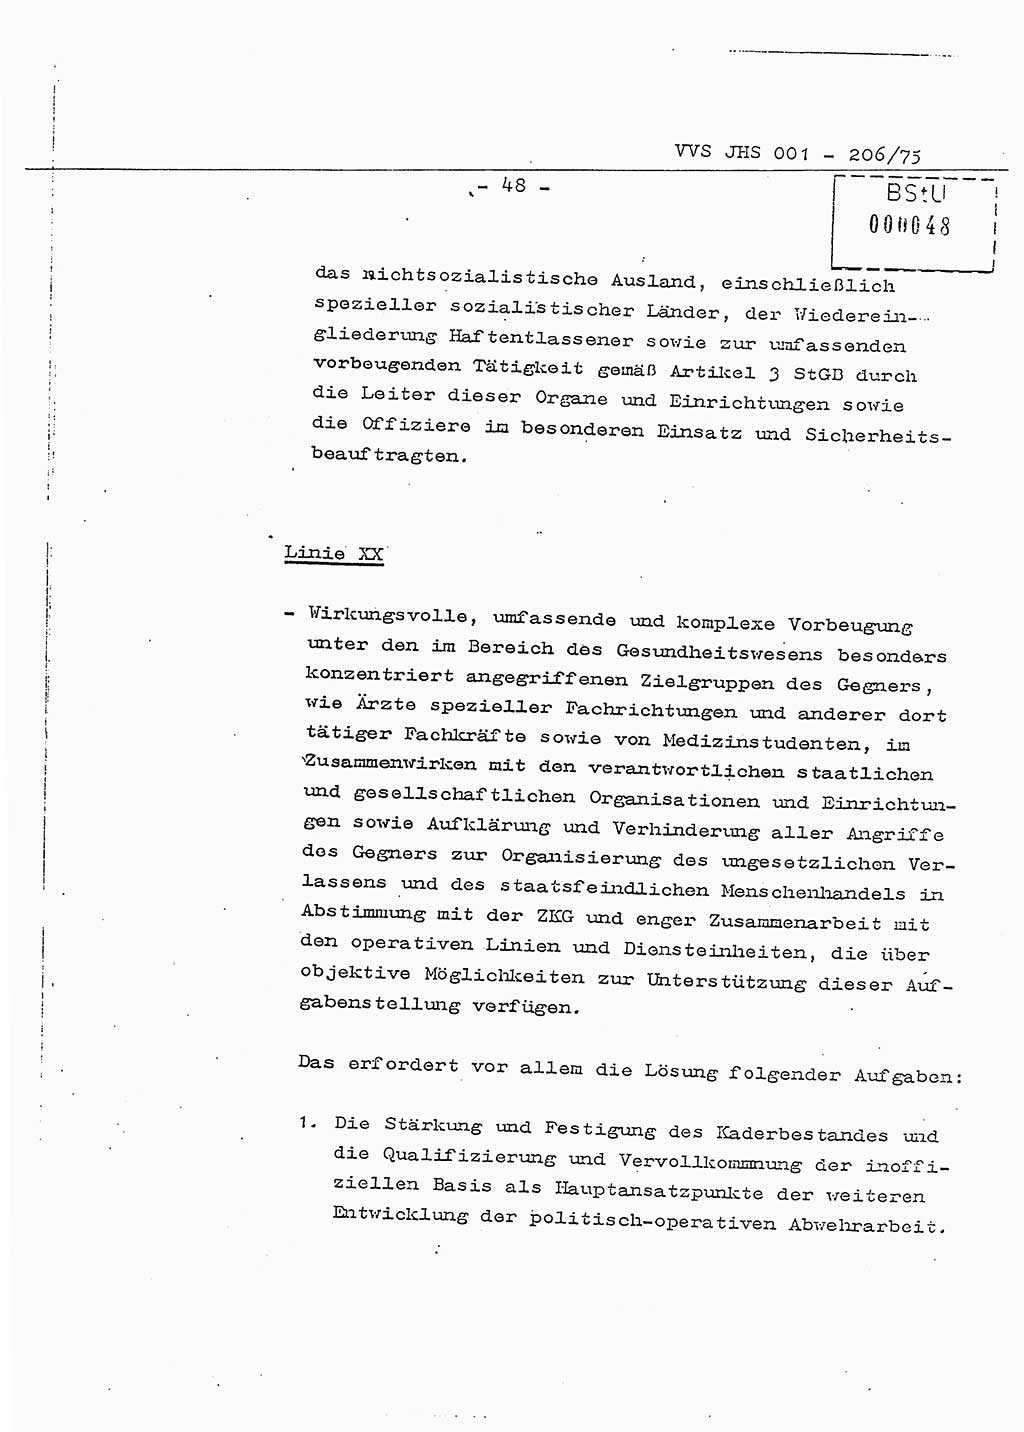 Dissertation Generalmajor Manfred Hummitzsch (Leiter der BV Leipzig), Generalmajor Heinz Fiedler (HA Ⅵ), Oberst Rolf Fister (HA Ⅸ), Ministerium für Staatssicherheit (MfS) [Deutsche Demokratische Republik (DDR)], Juristische Hochschule (JHS), Vertrauliche Verschlußsache (VVS) 001-206/75, Potsdam 1975, Seite 48 (Diss. MfS DDR JHS VVS 001-206/75 1975, S. 48)